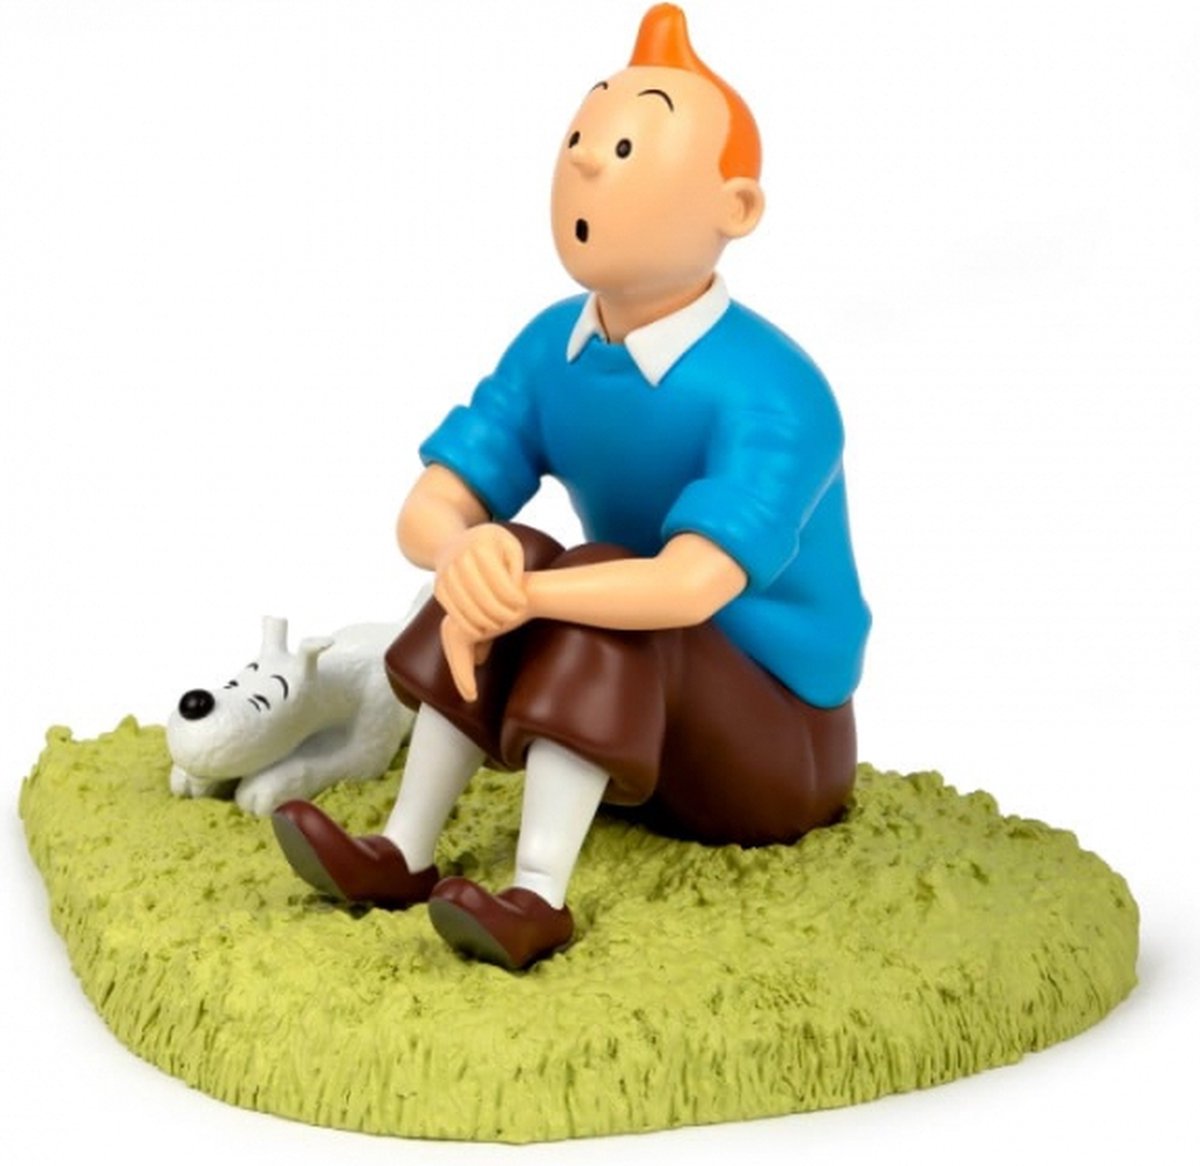 Tintin assis dans l'herbe. Statue officielle de Tintin réalisée